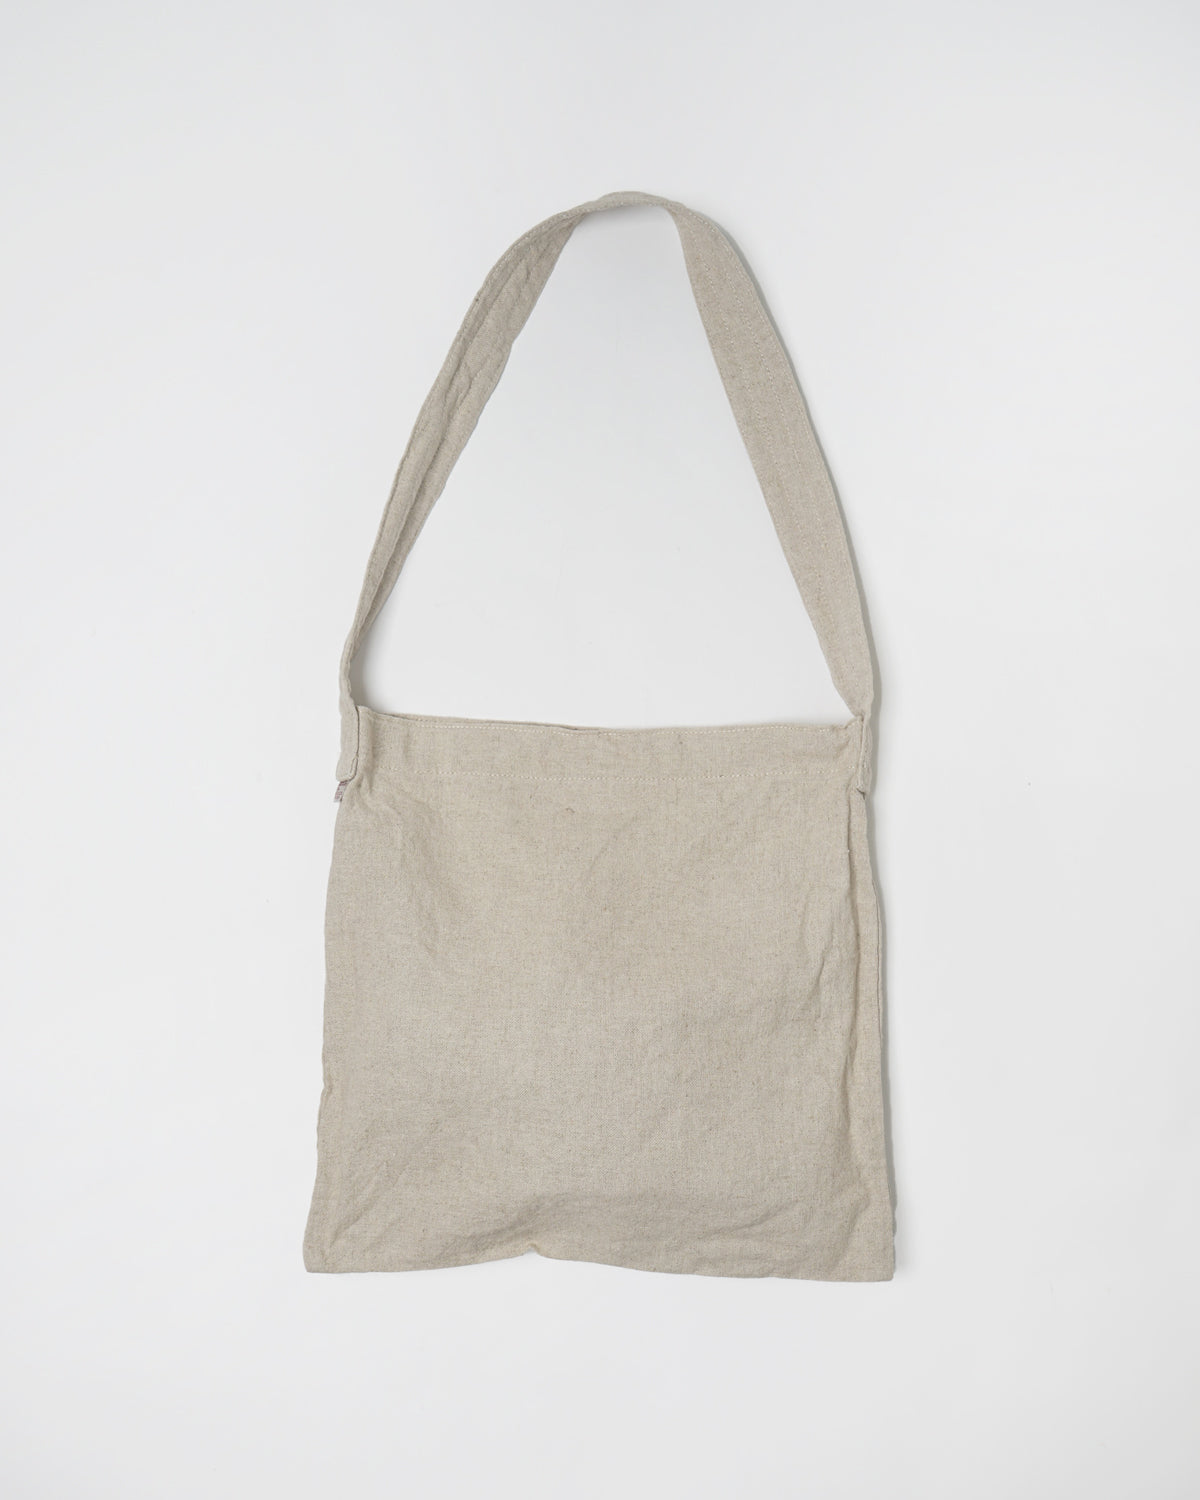 Woven Shoulder Bag / Ivory